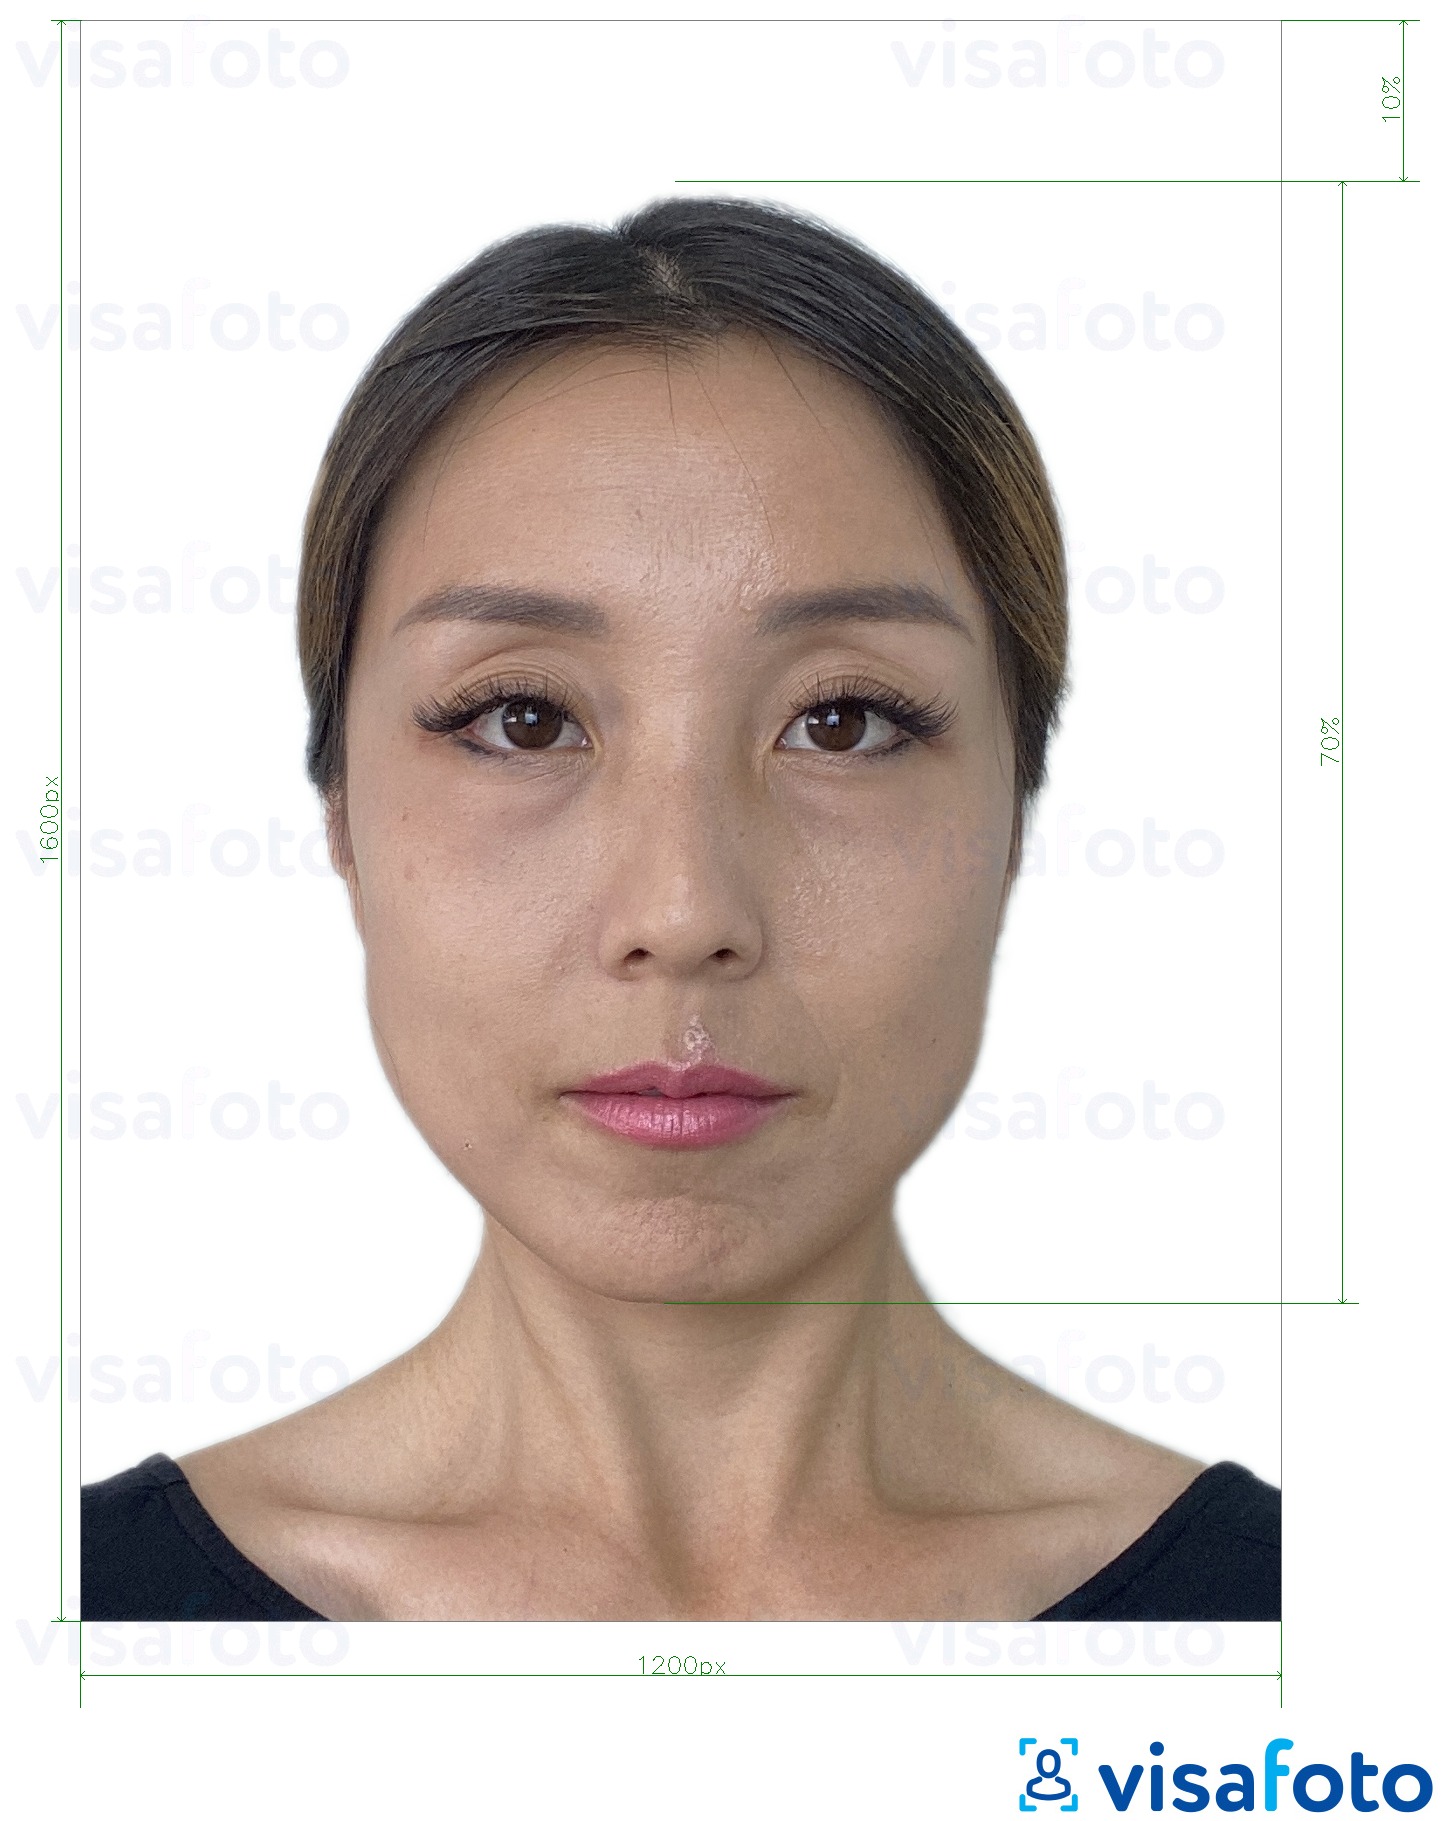 Exemplu de fotografie pentru Hong Kong on-line viza electronică 1200x1600 pixeli cu aceeași dimensiune indicată